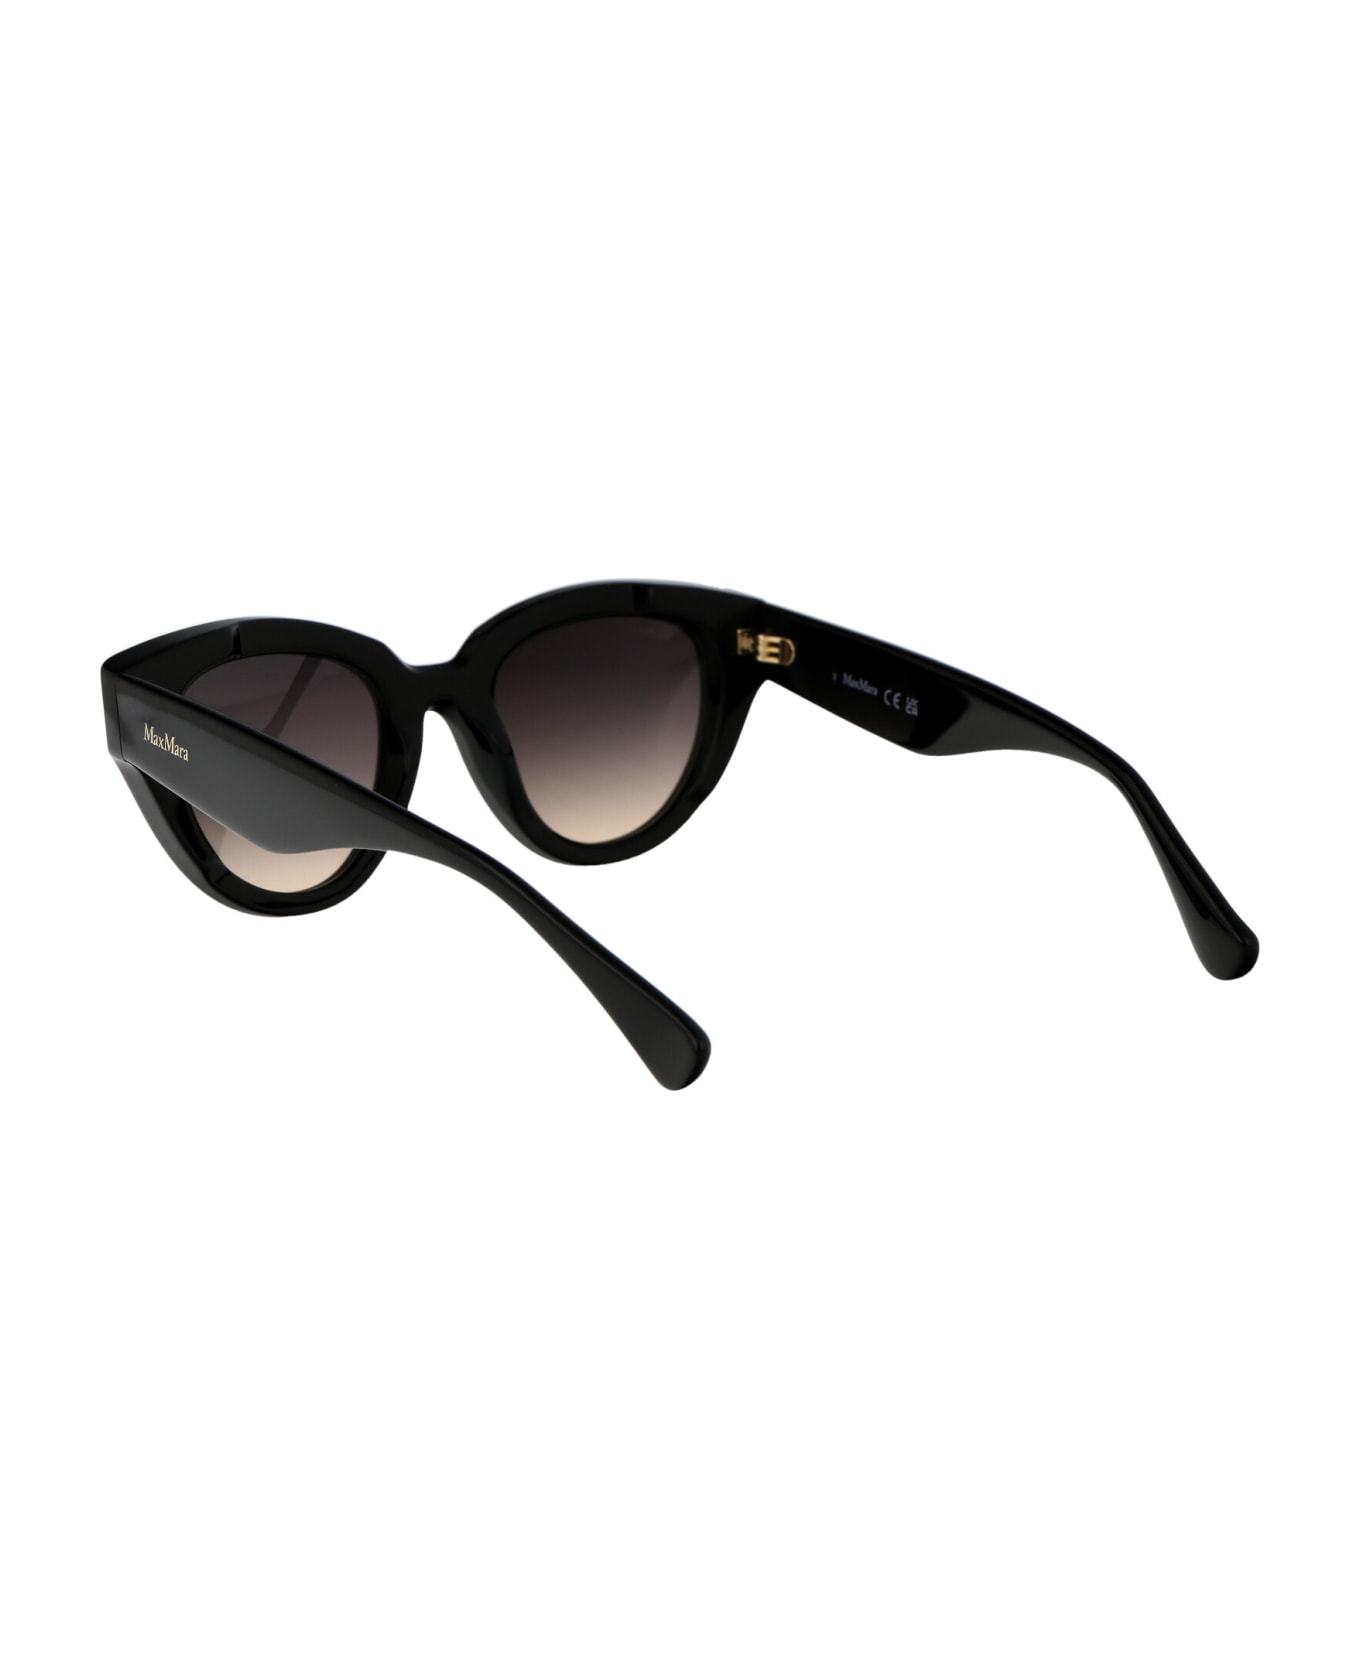 Max Mara Glimpse1 Sunglasses - 01B Nero Lucido/Fumo Grad